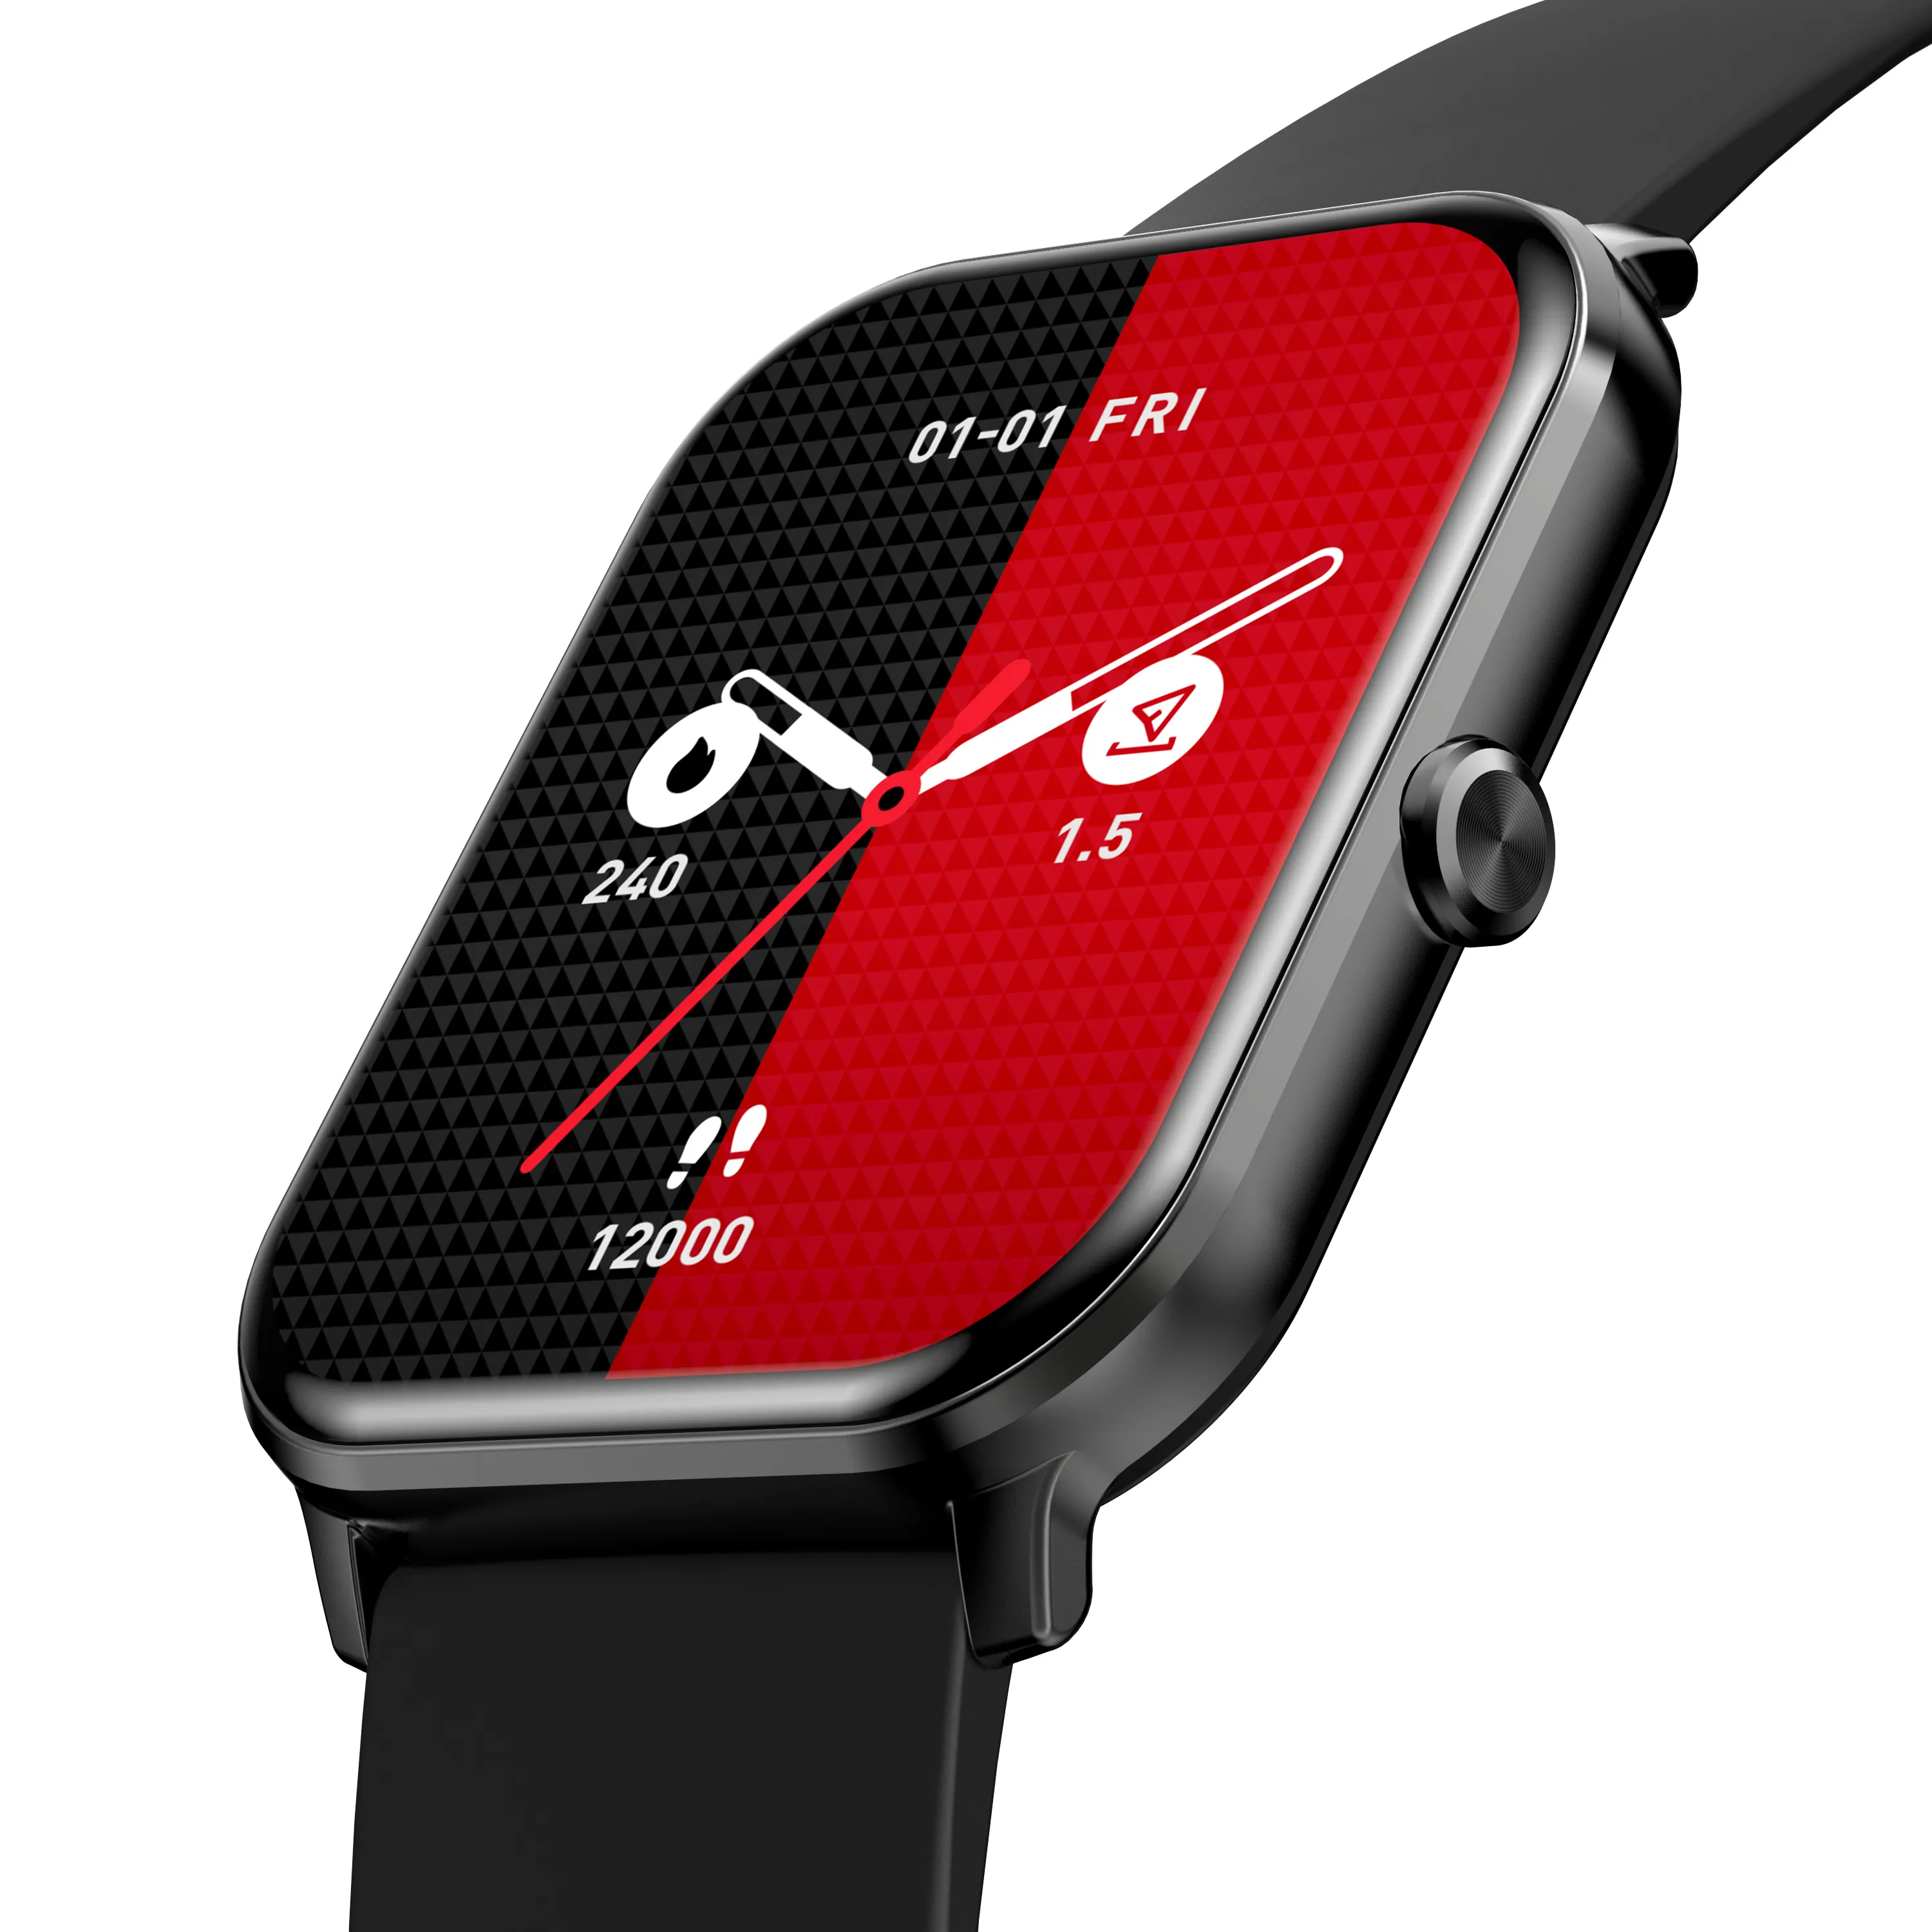 Goldene Farbe Smartwatch Sport Android iOS Smartphone amoled wasserdicht Smart Armband Smartwatch für Männer Frauen